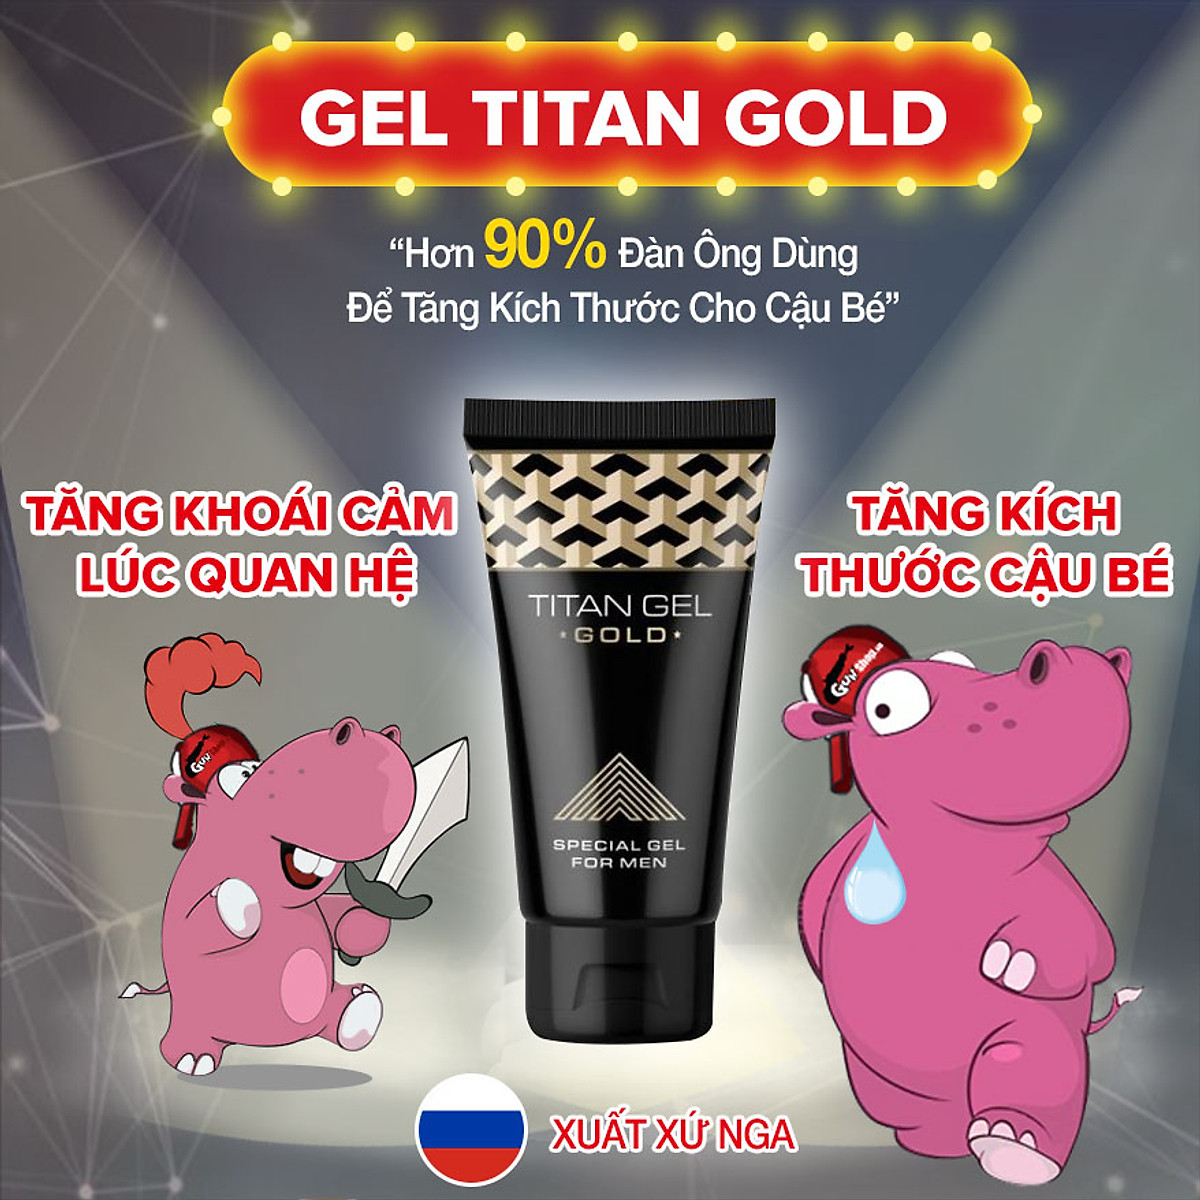 Bộ Đôi Titan Gel Đỏ + Titan Gel Gold Tăng Kích Thước - Hàng Chuẩn Nga